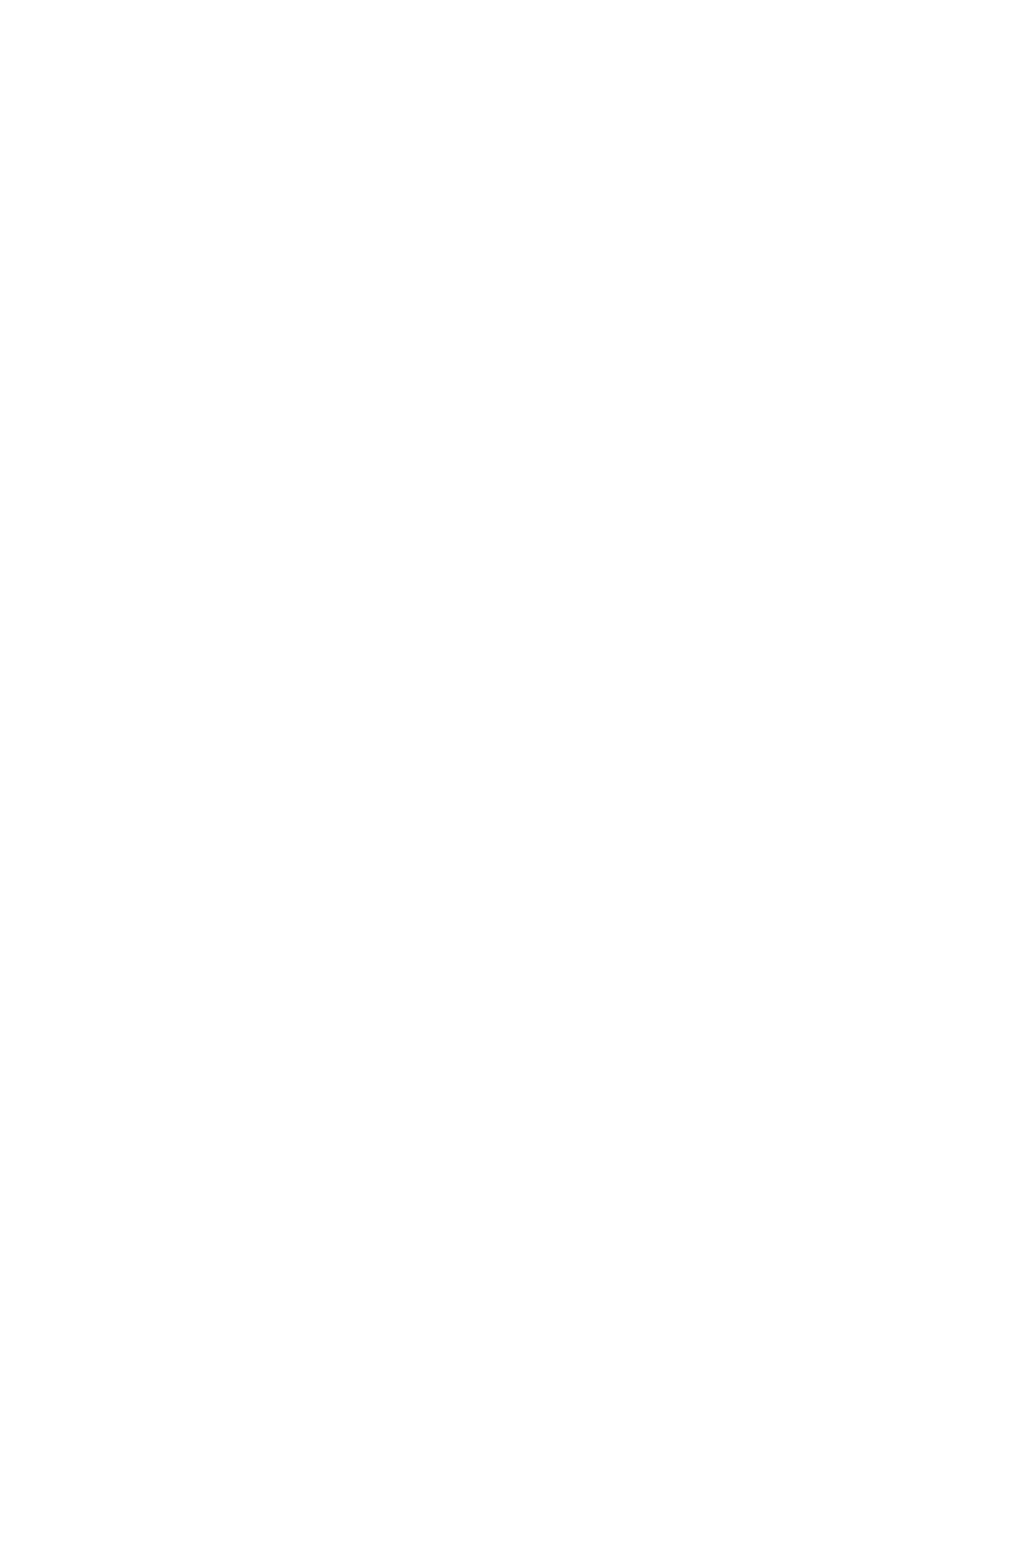 UnipolSai Assicurazioni logo pour fonds sombres (PNG transparent)